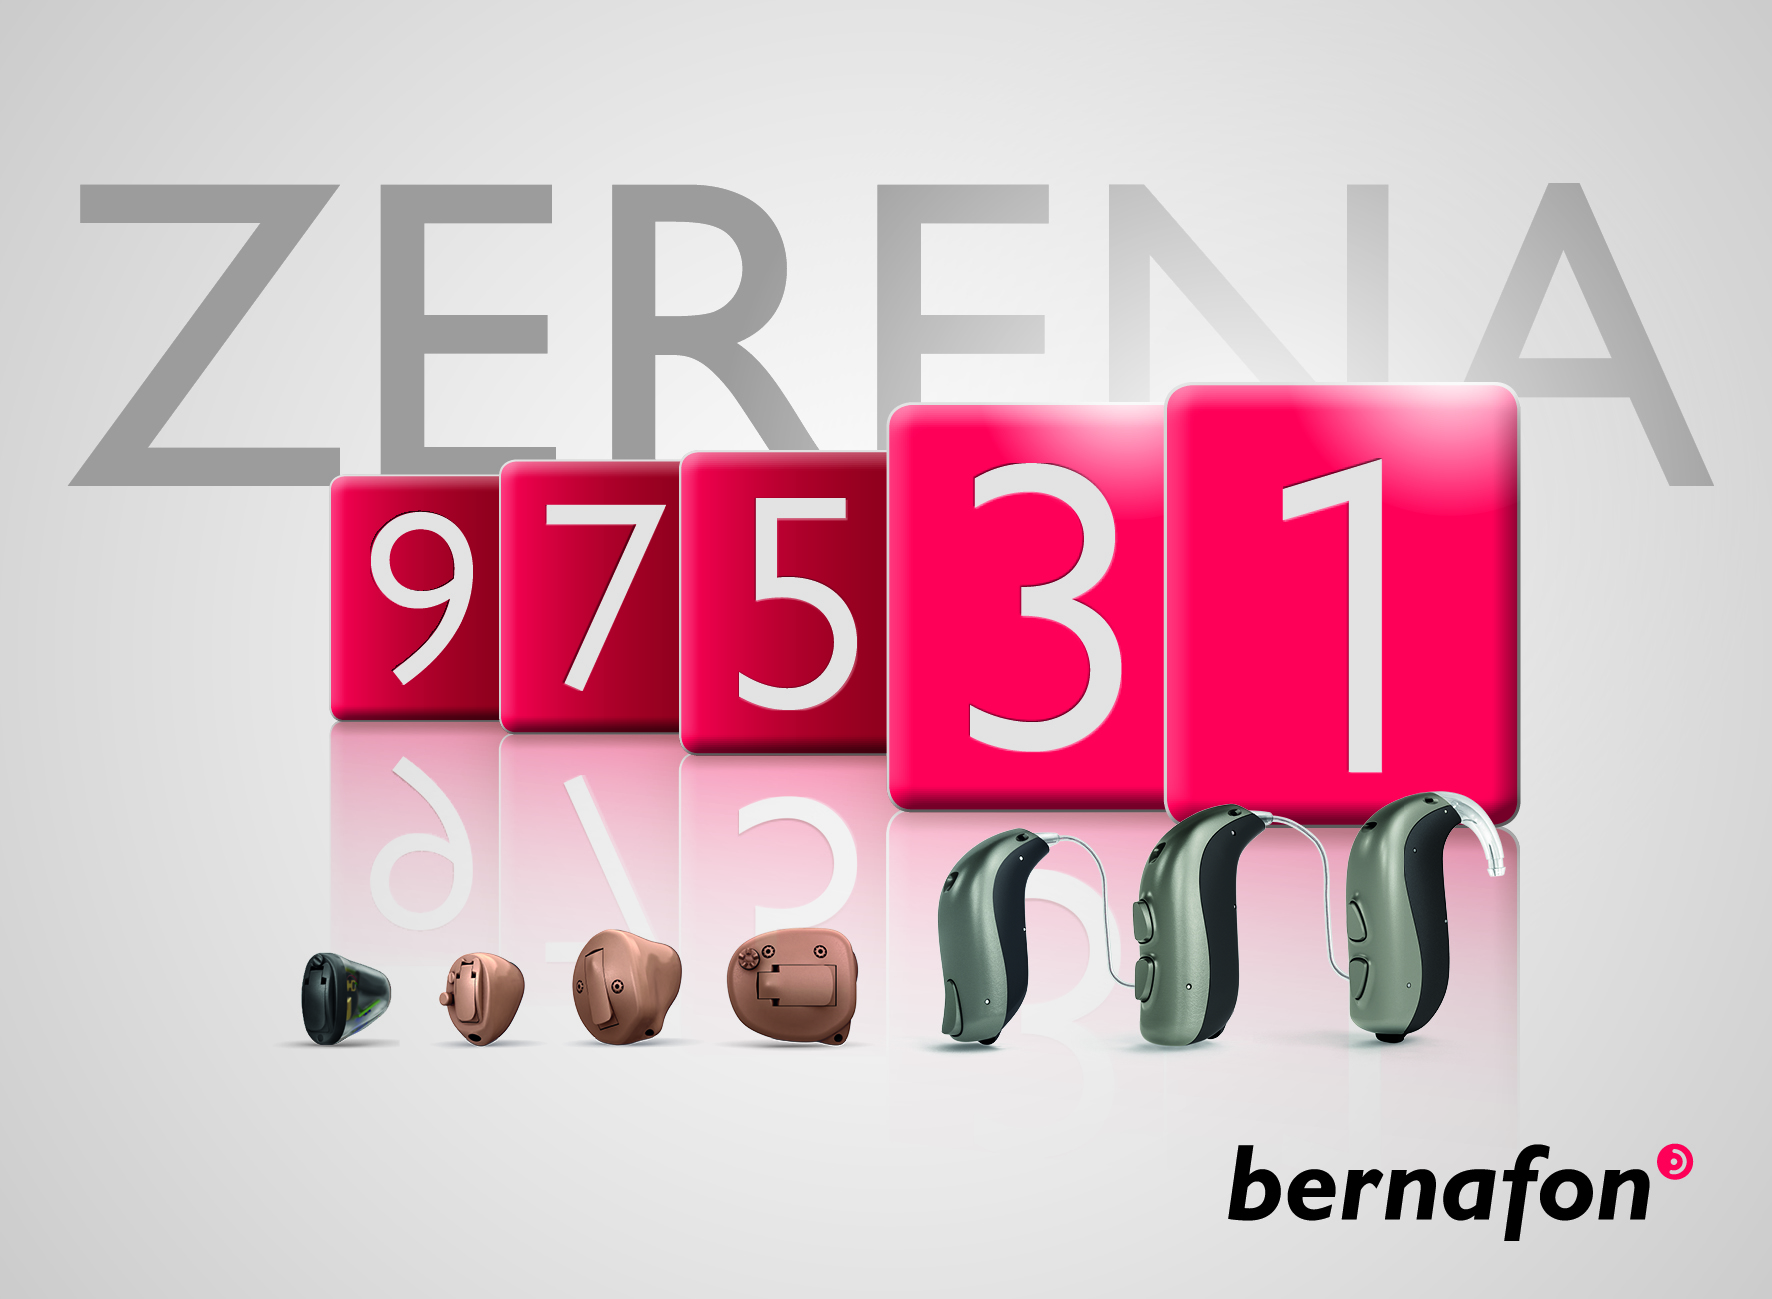 Bernafon Zerena: Neue Preisklassen und Ido´s mit 2,4 GHz-Technologie